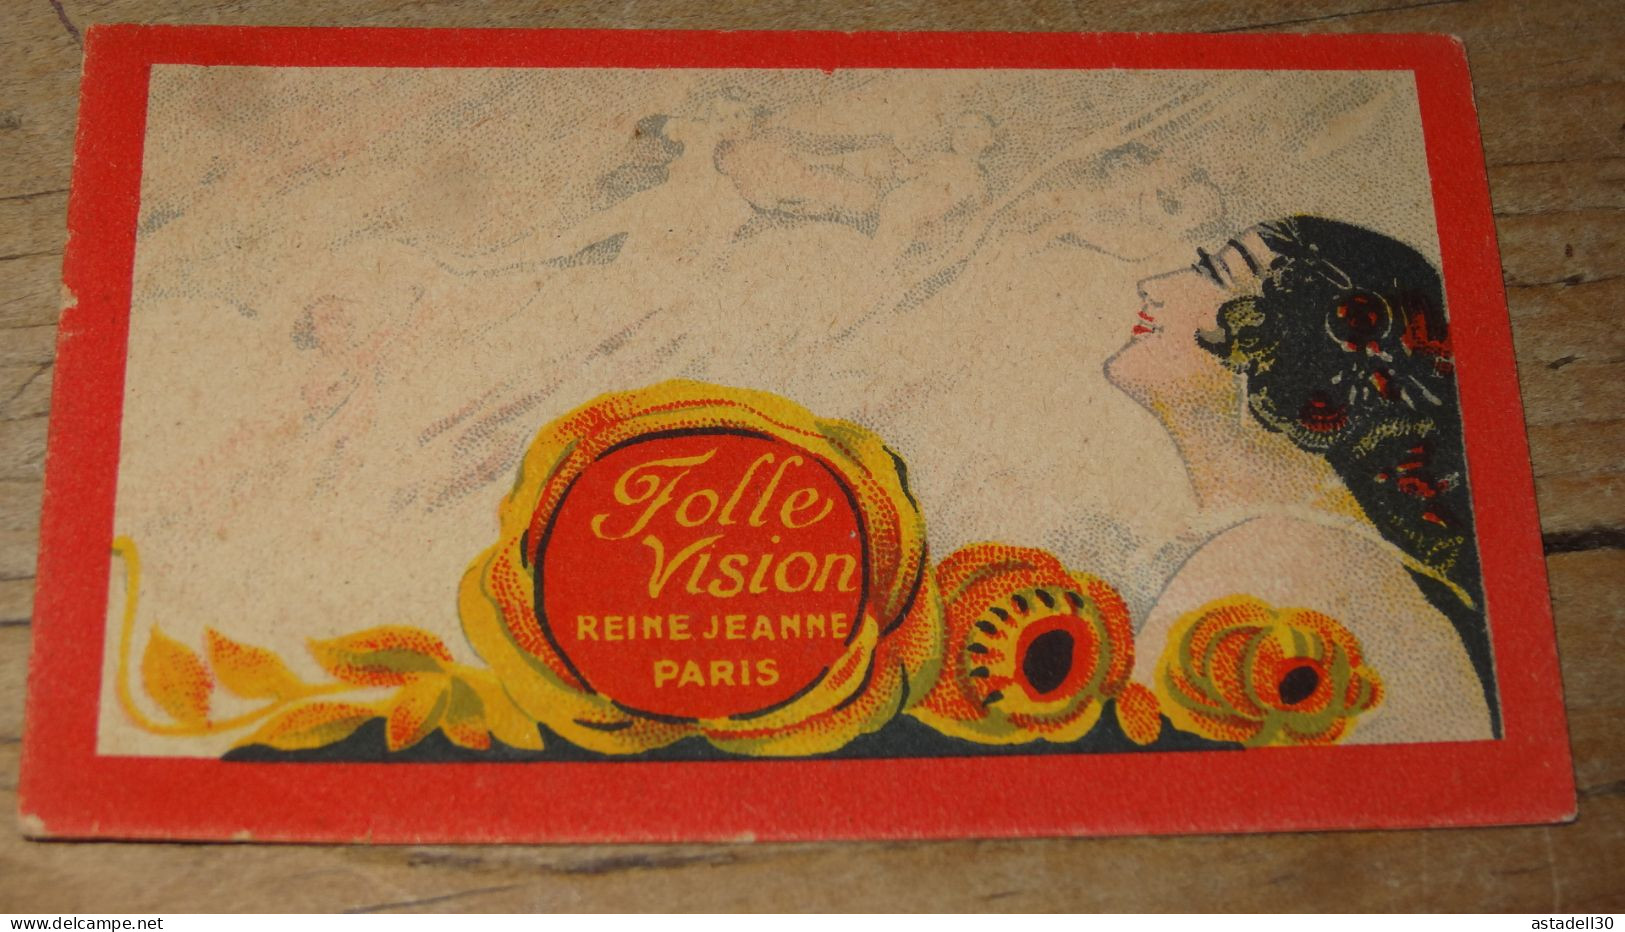 Carte FOLLE VISION, Reine Jeanne PARIS .............. E3-95 - Vintage (until 1960)